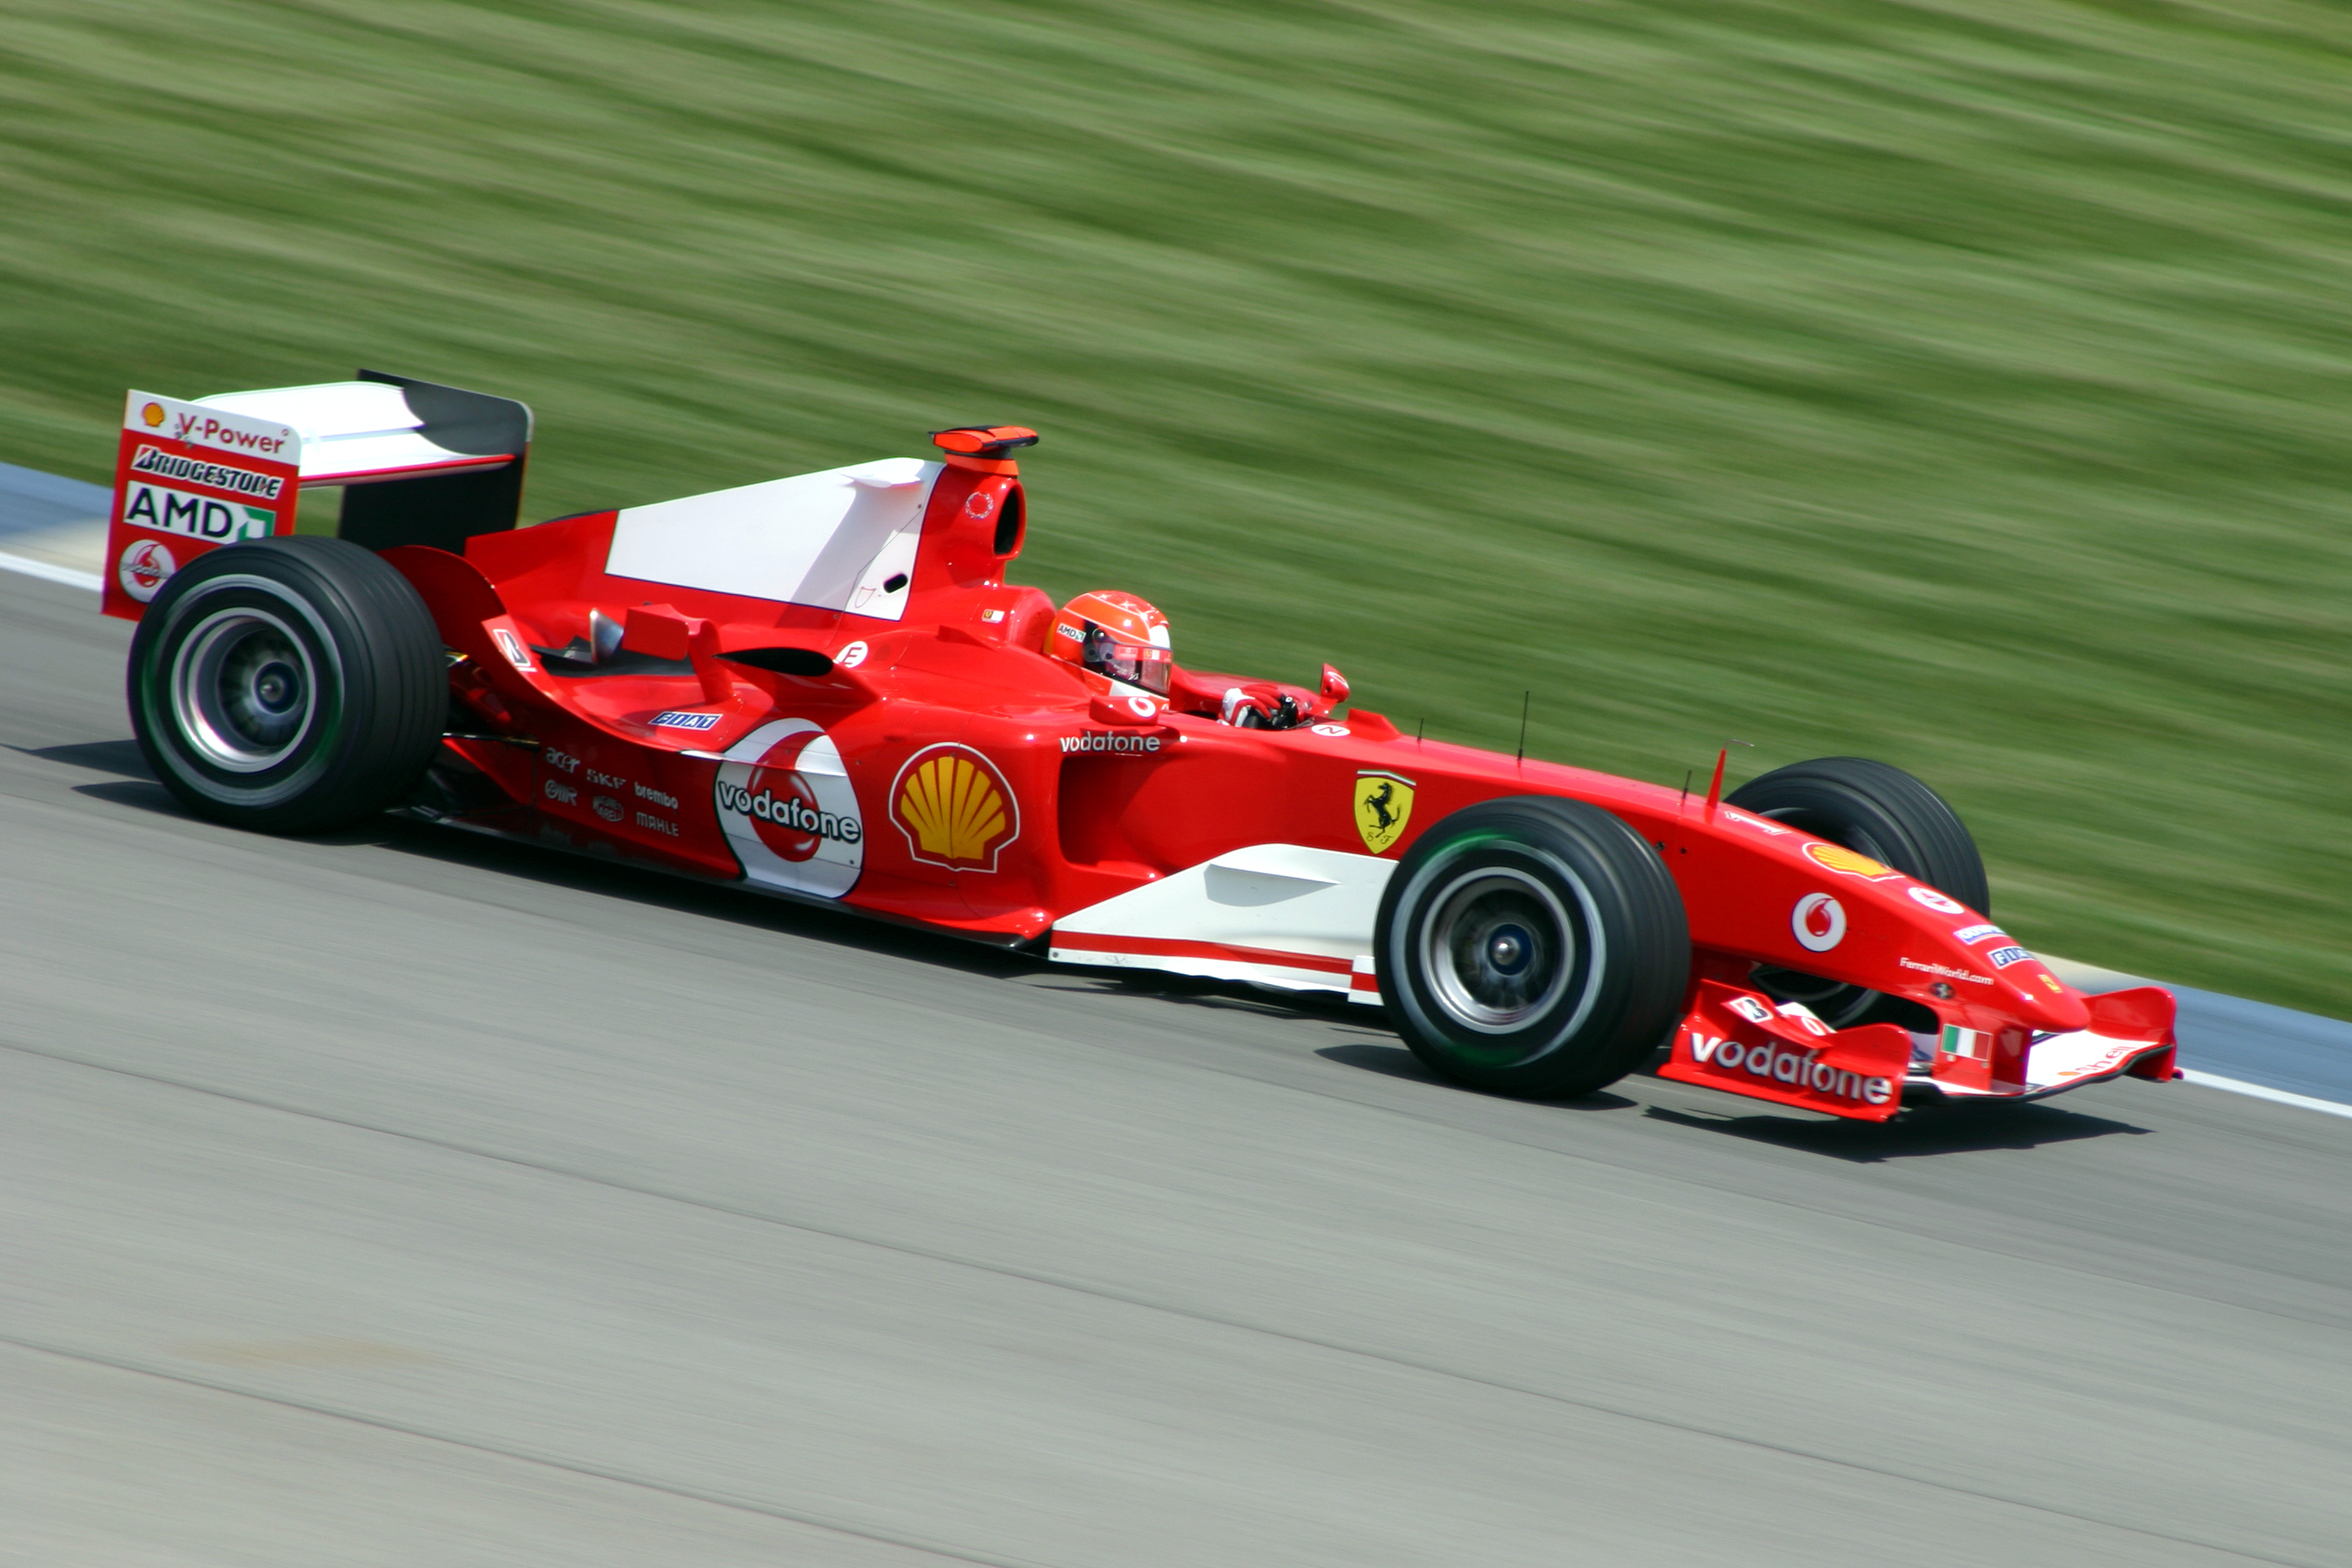 Michael_Schumacher_Ferrari_2004.jpg